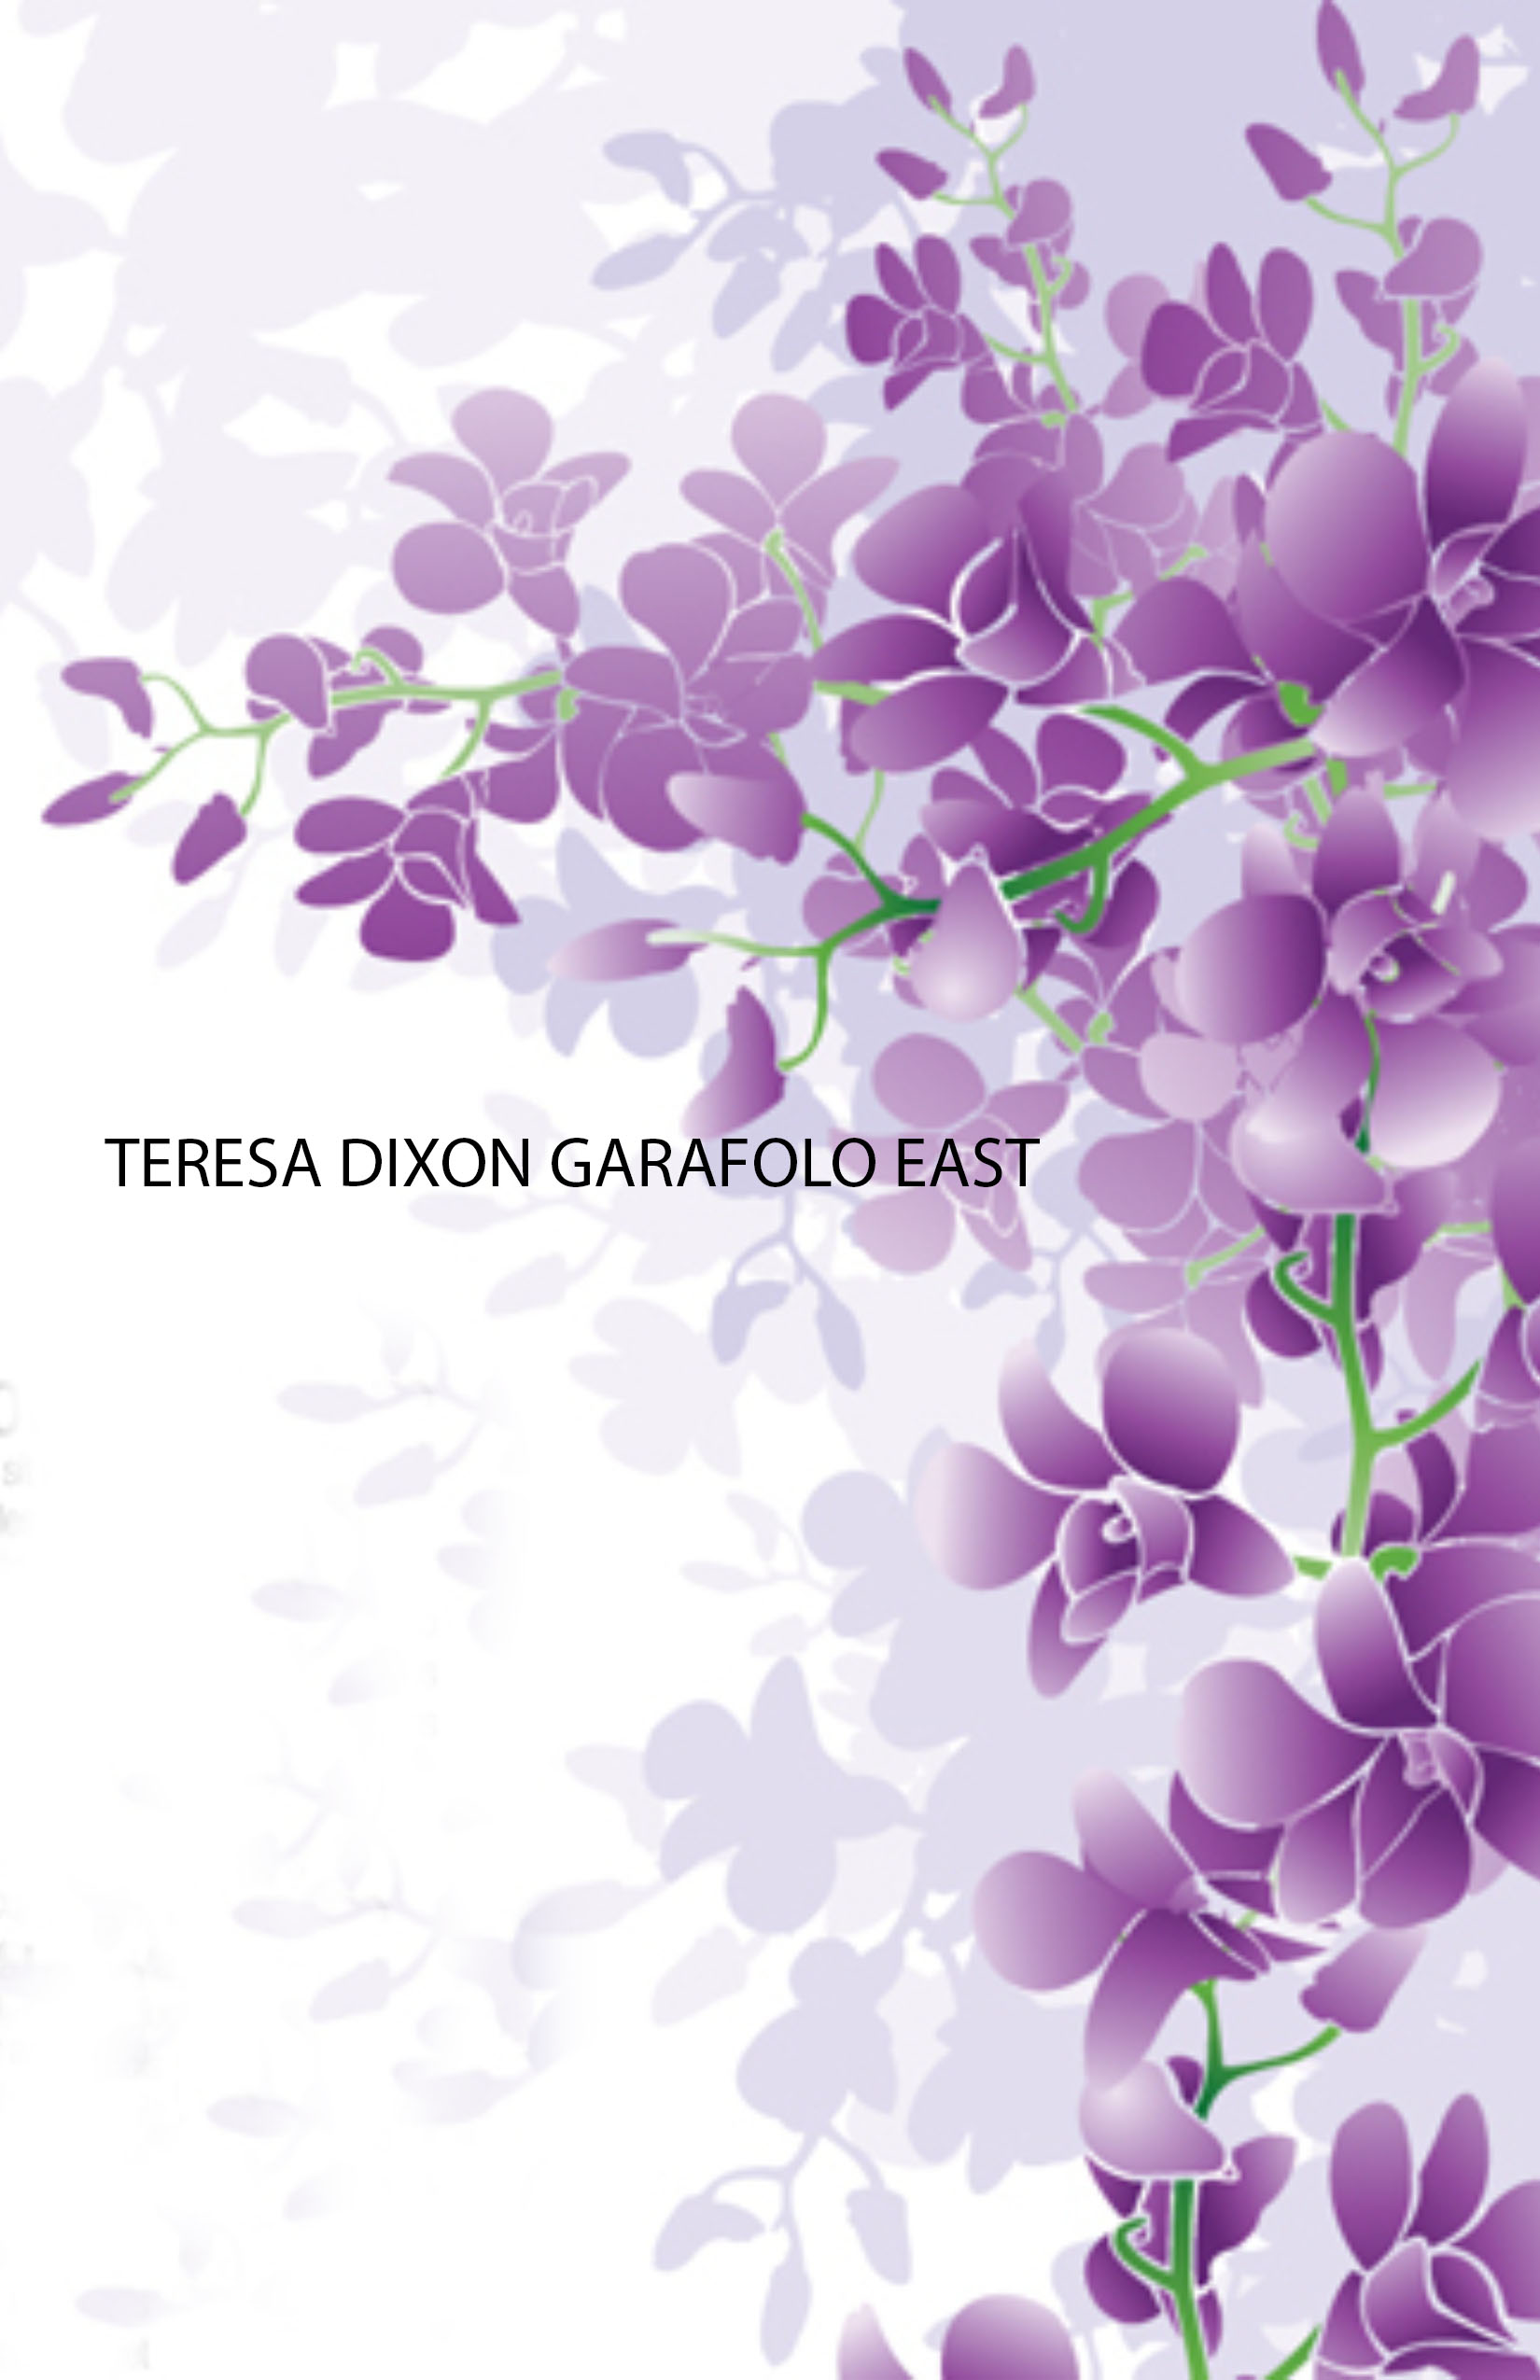 Teresa Dixon Garafolo East (Terri)